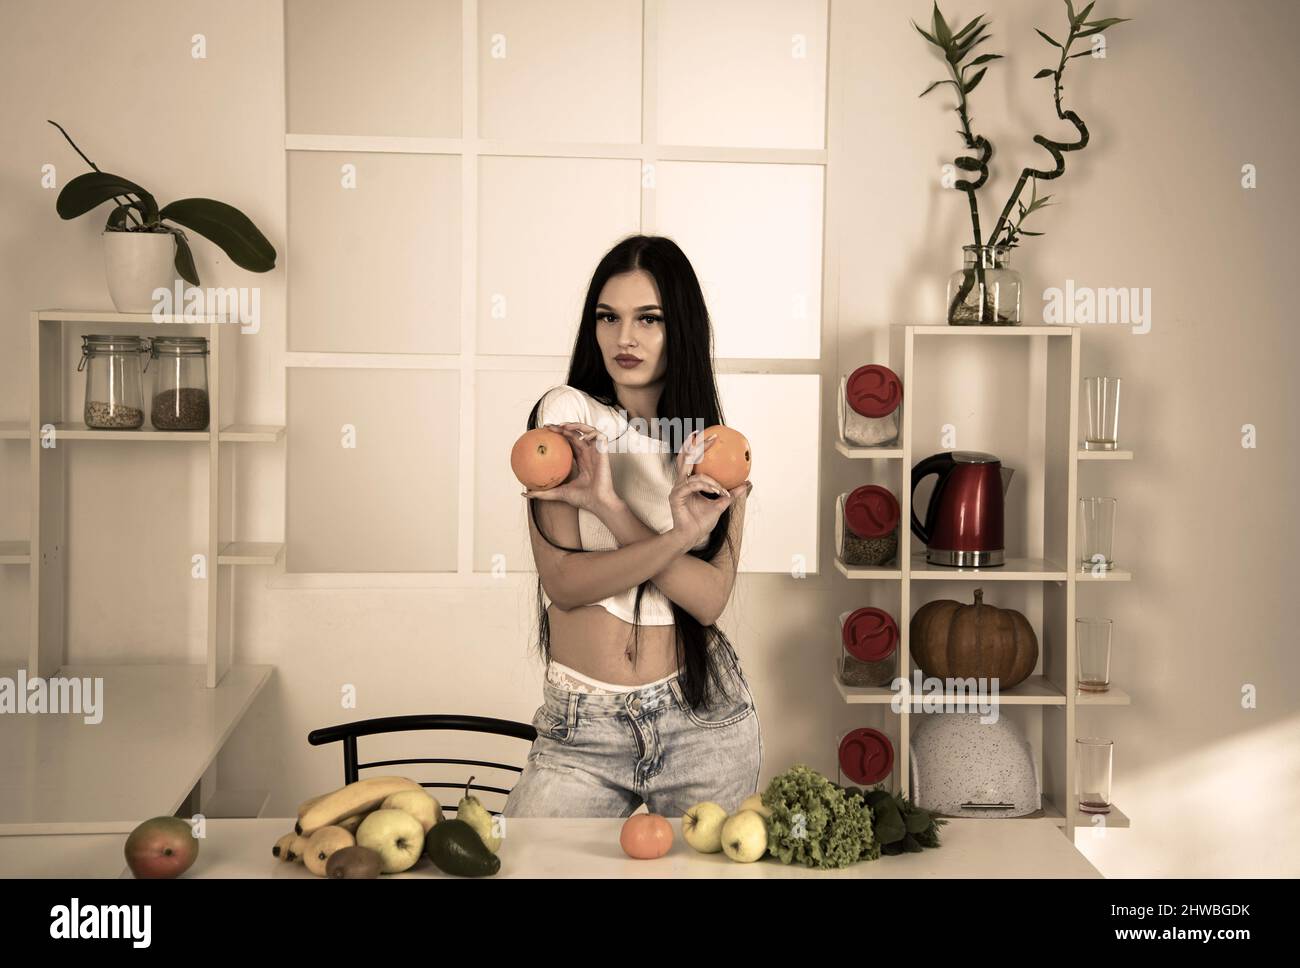 Calzata sportiva che tiene l'arancia vicino a frutta, verdura e metro a nastro su tavola da cucina, dieta per contare le calorie Foto Stock